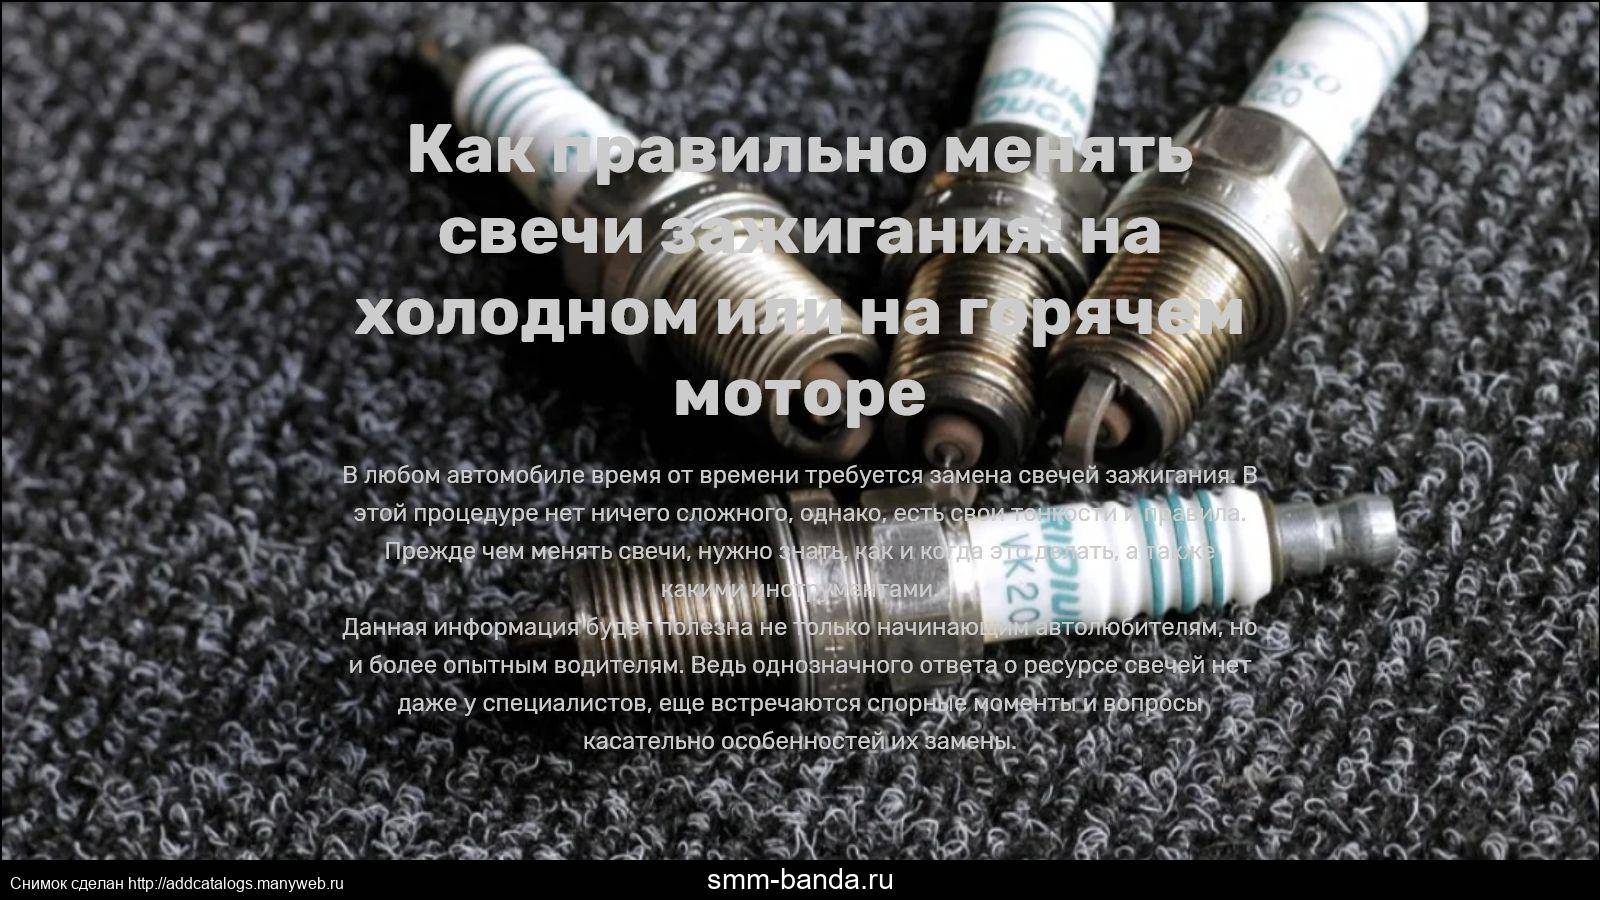 Как правильно менять свечи зажигания: на холодном или на горячем моторе — auto-self.ru